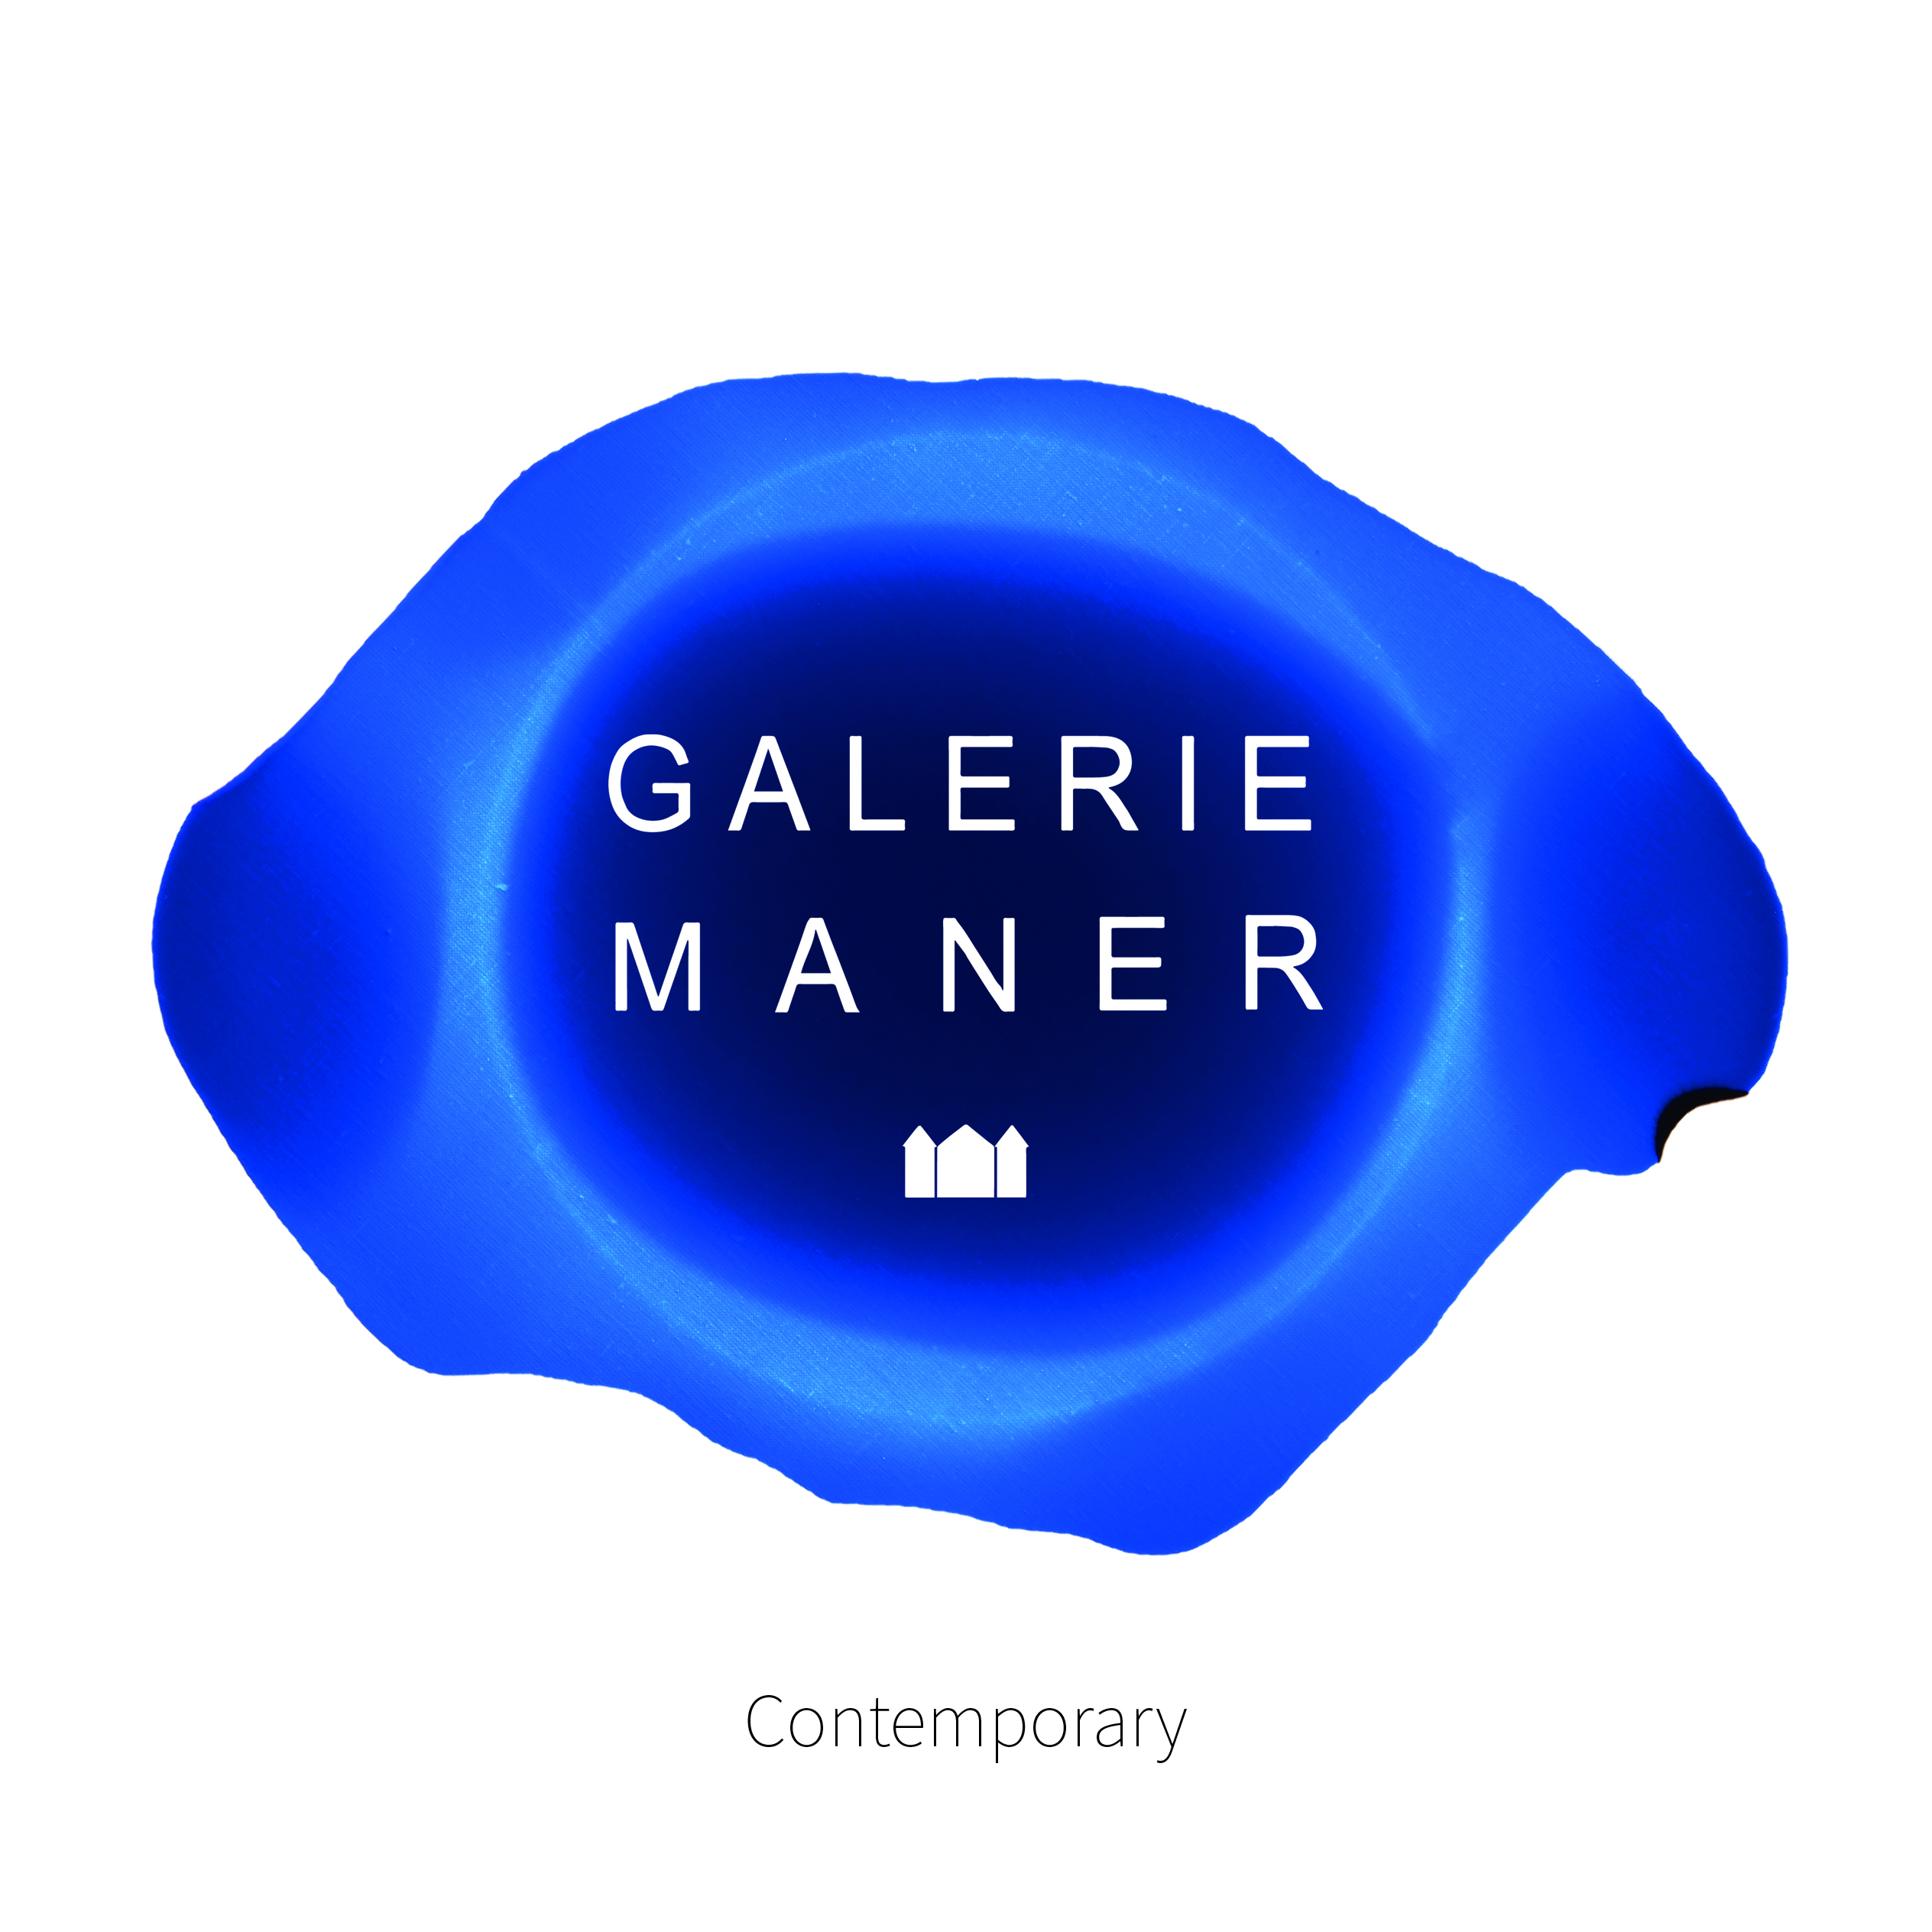 Nouveautés Galerie Maner 2019 - Collection Contemporary superbe galerie d'art à Pont Aven Bretagne Sculpture et peintures